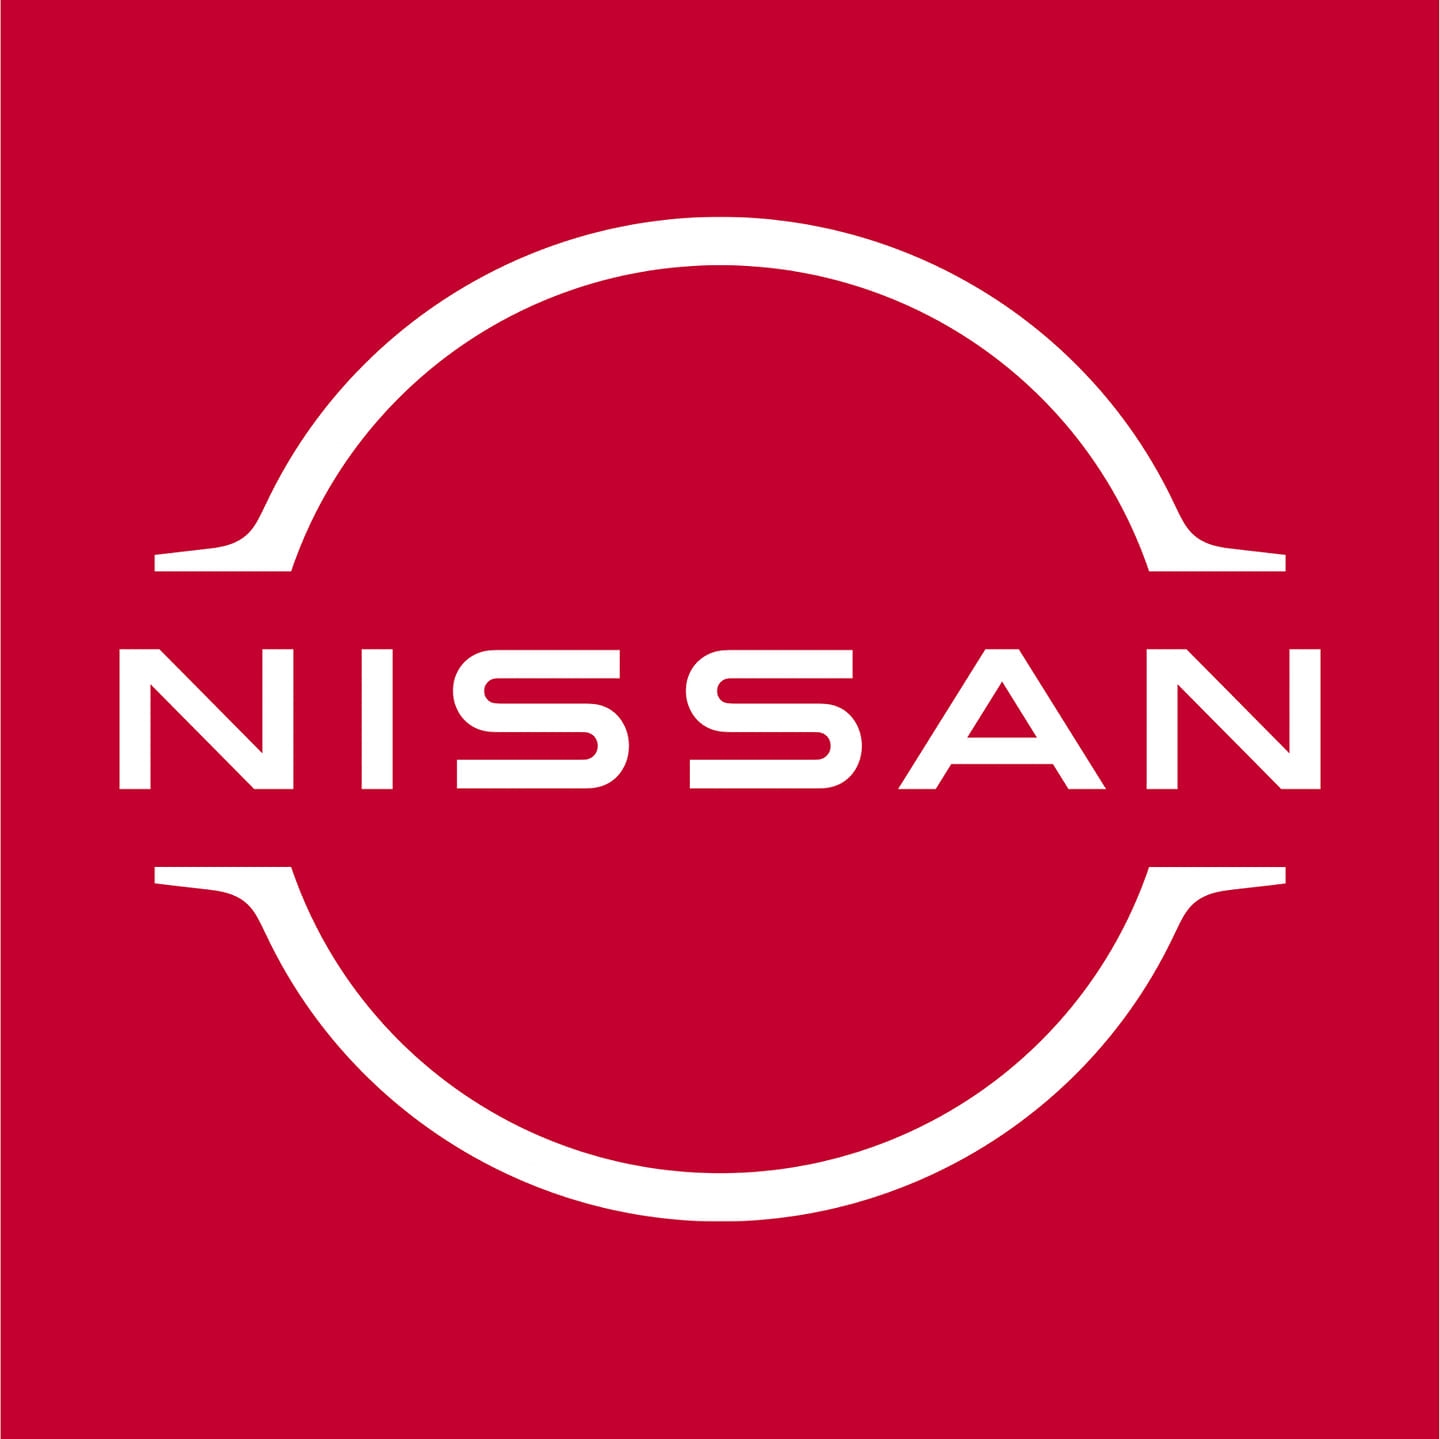 EXPRESS NISSAN GUNTUR Logo